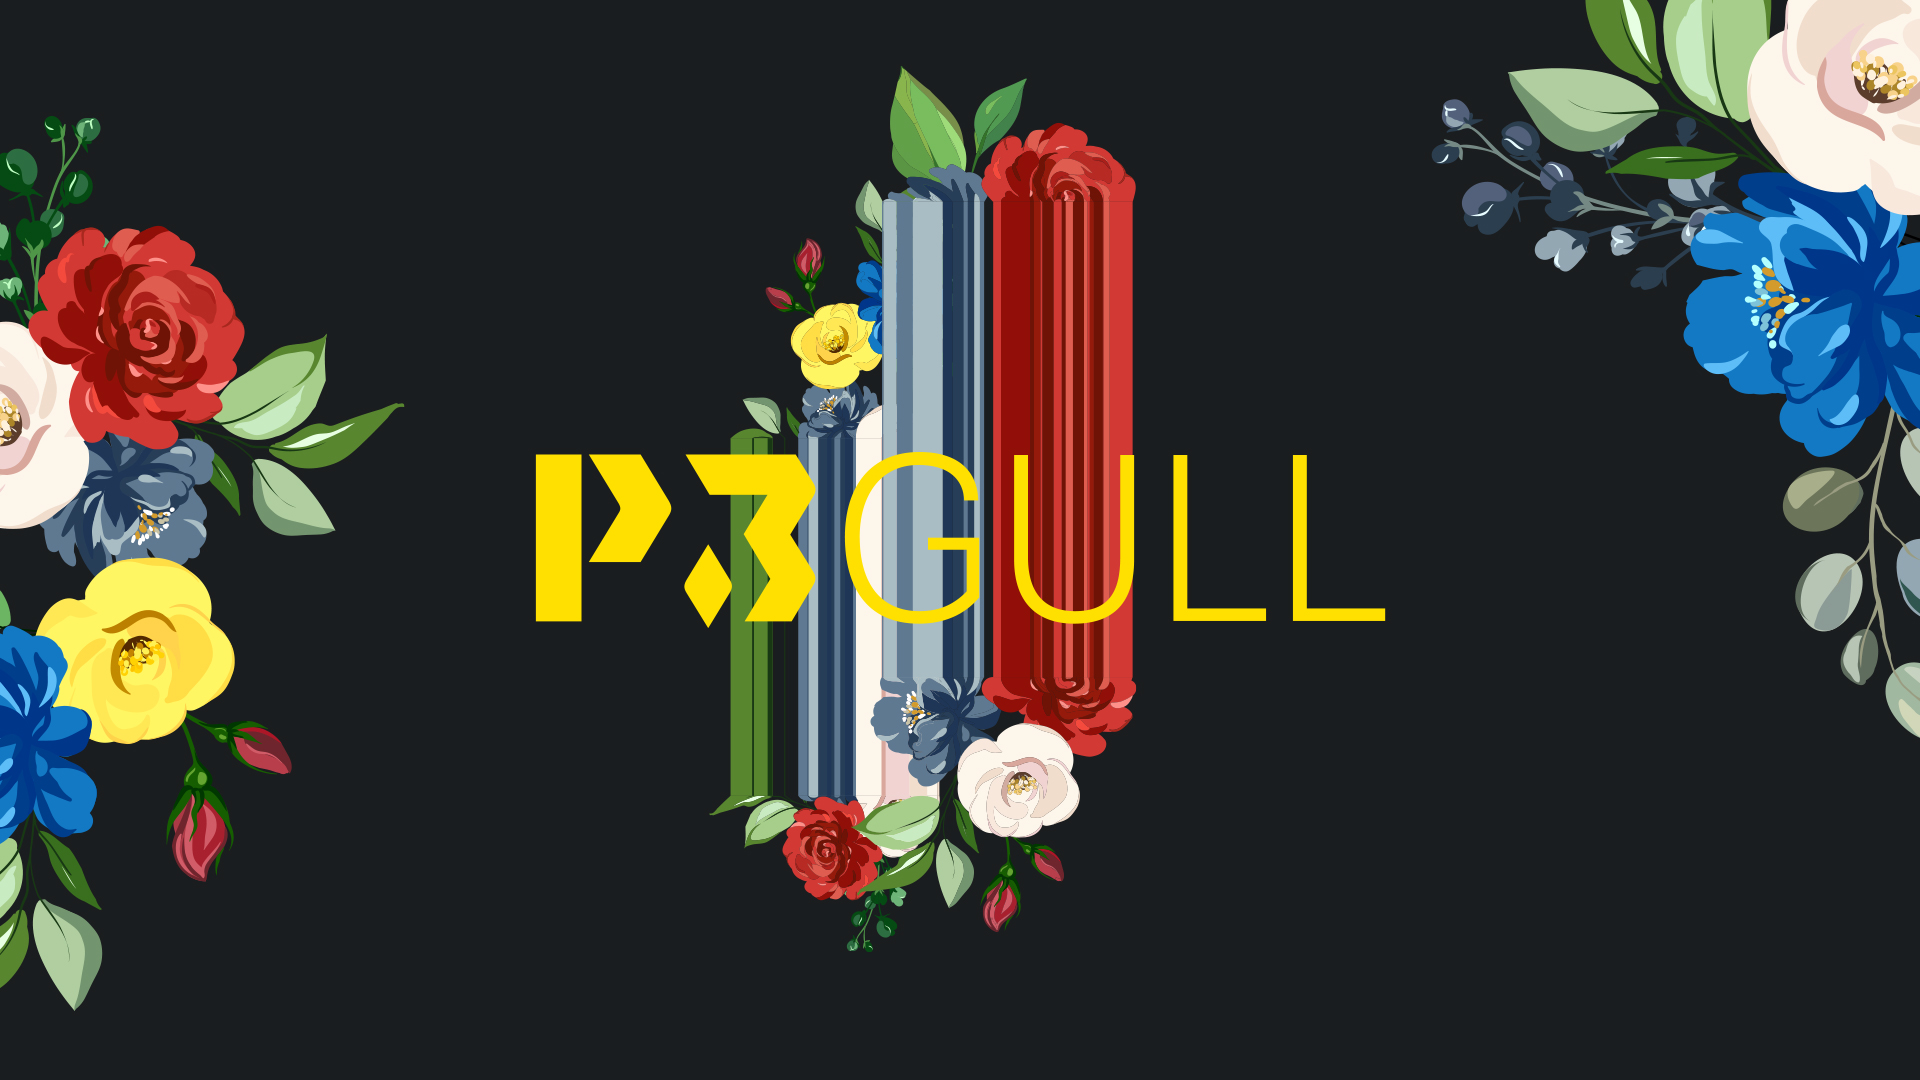 P3 Gull 2020 - logo med sort bakgrunn